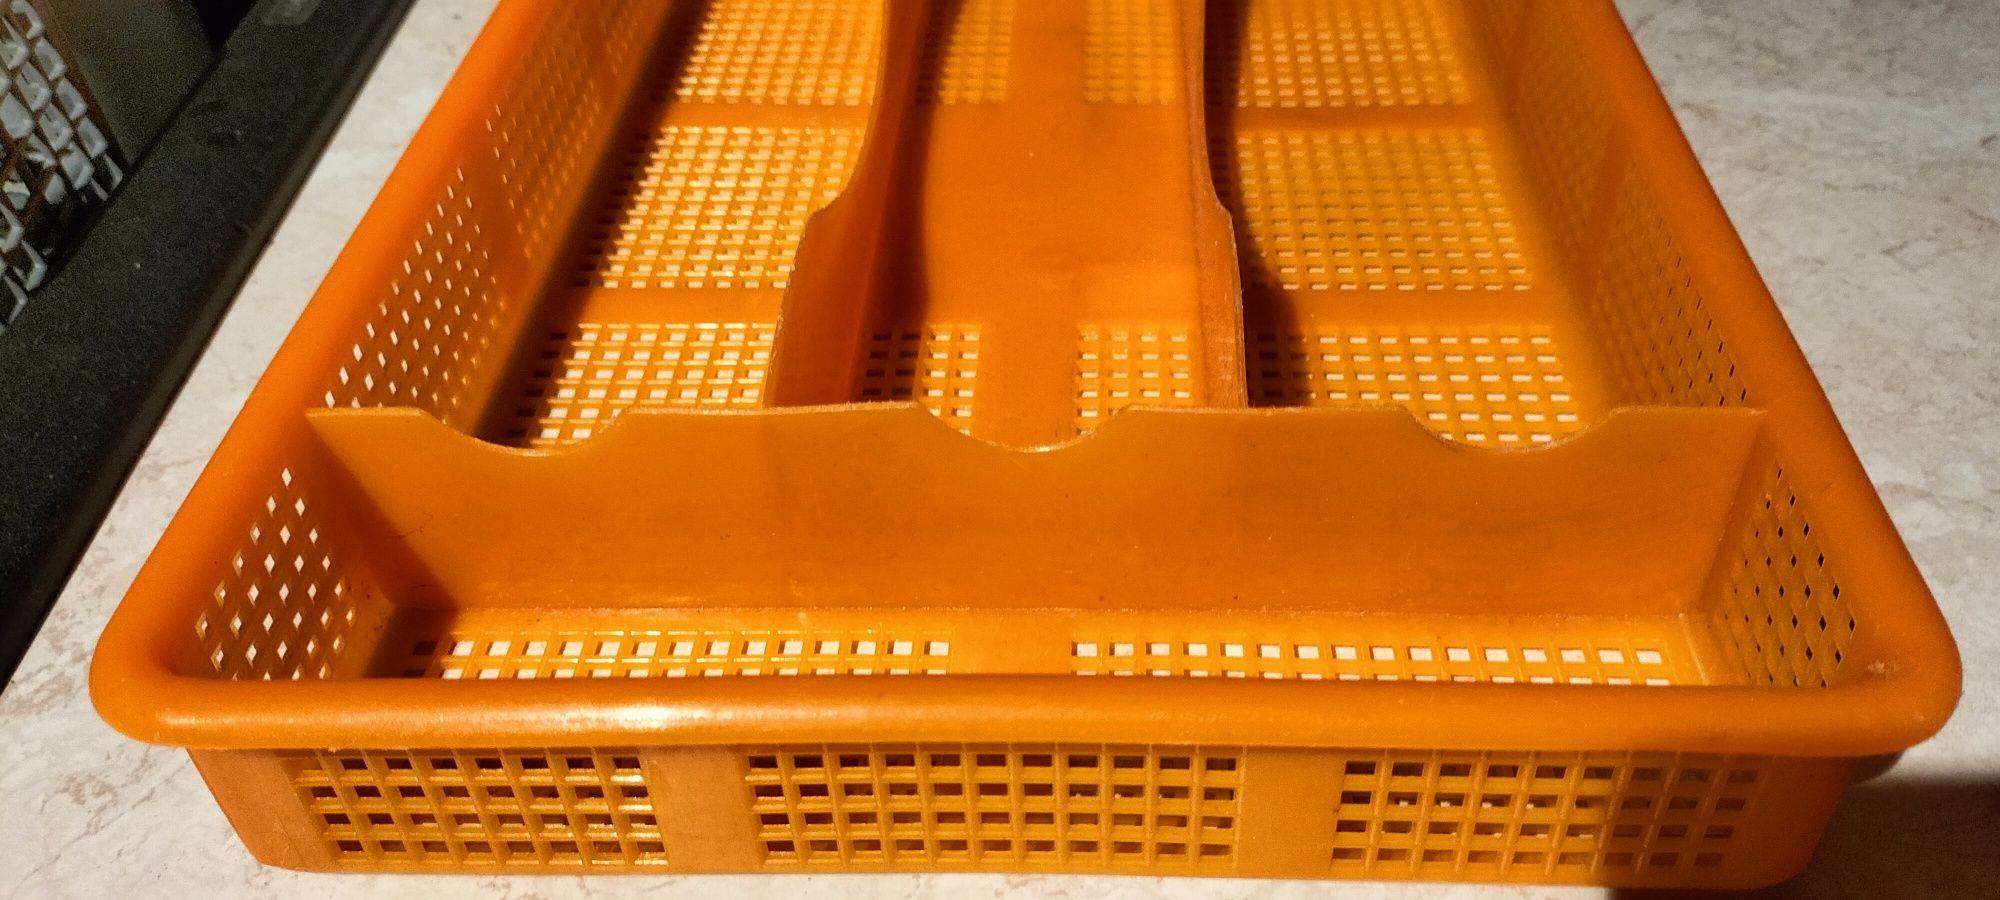 Wkład do szuflady pomarańczowy plastikowy